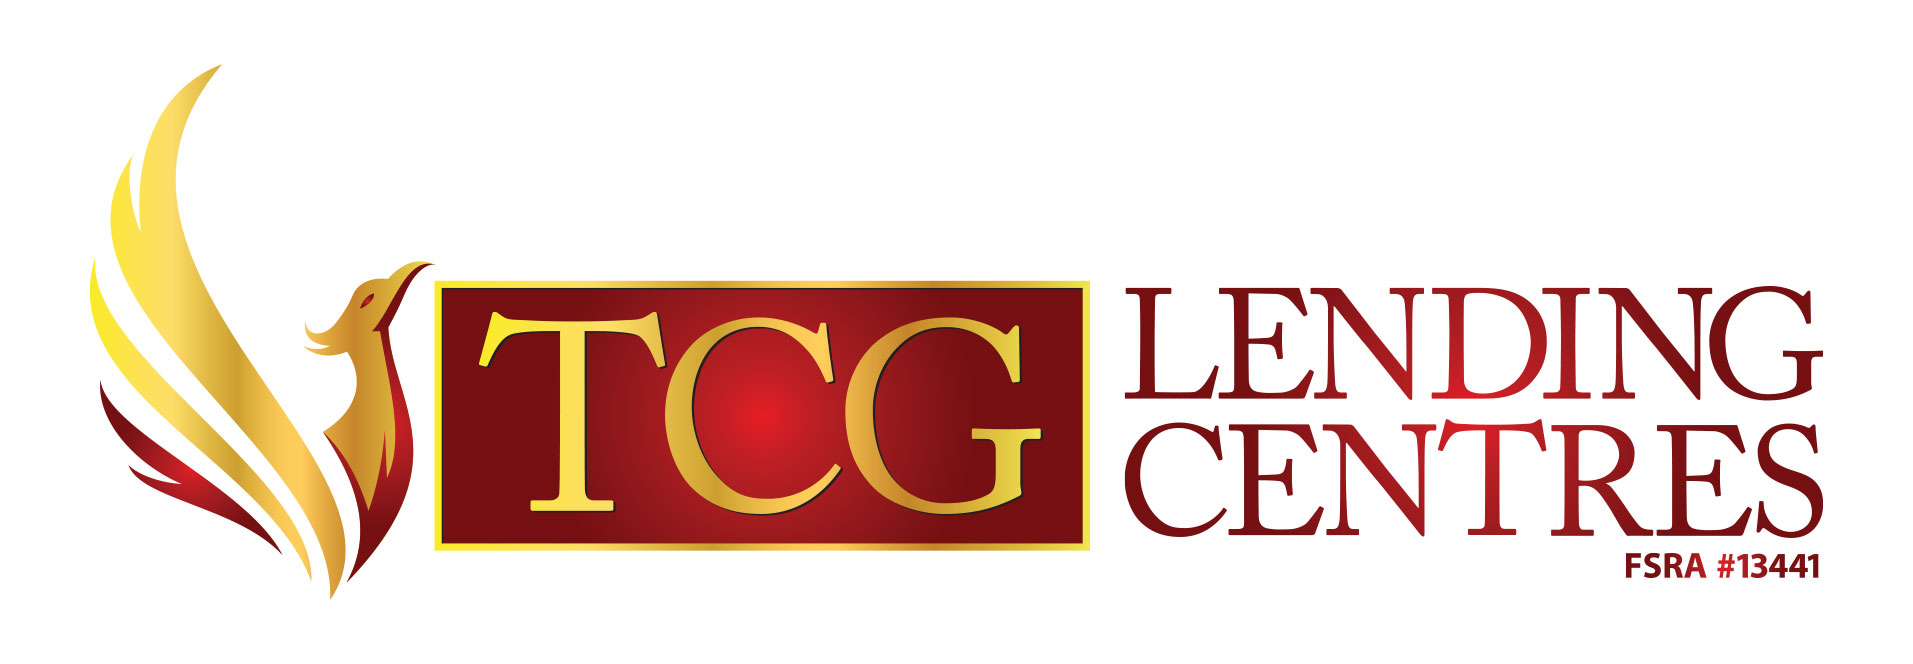 TCG Lending Centre